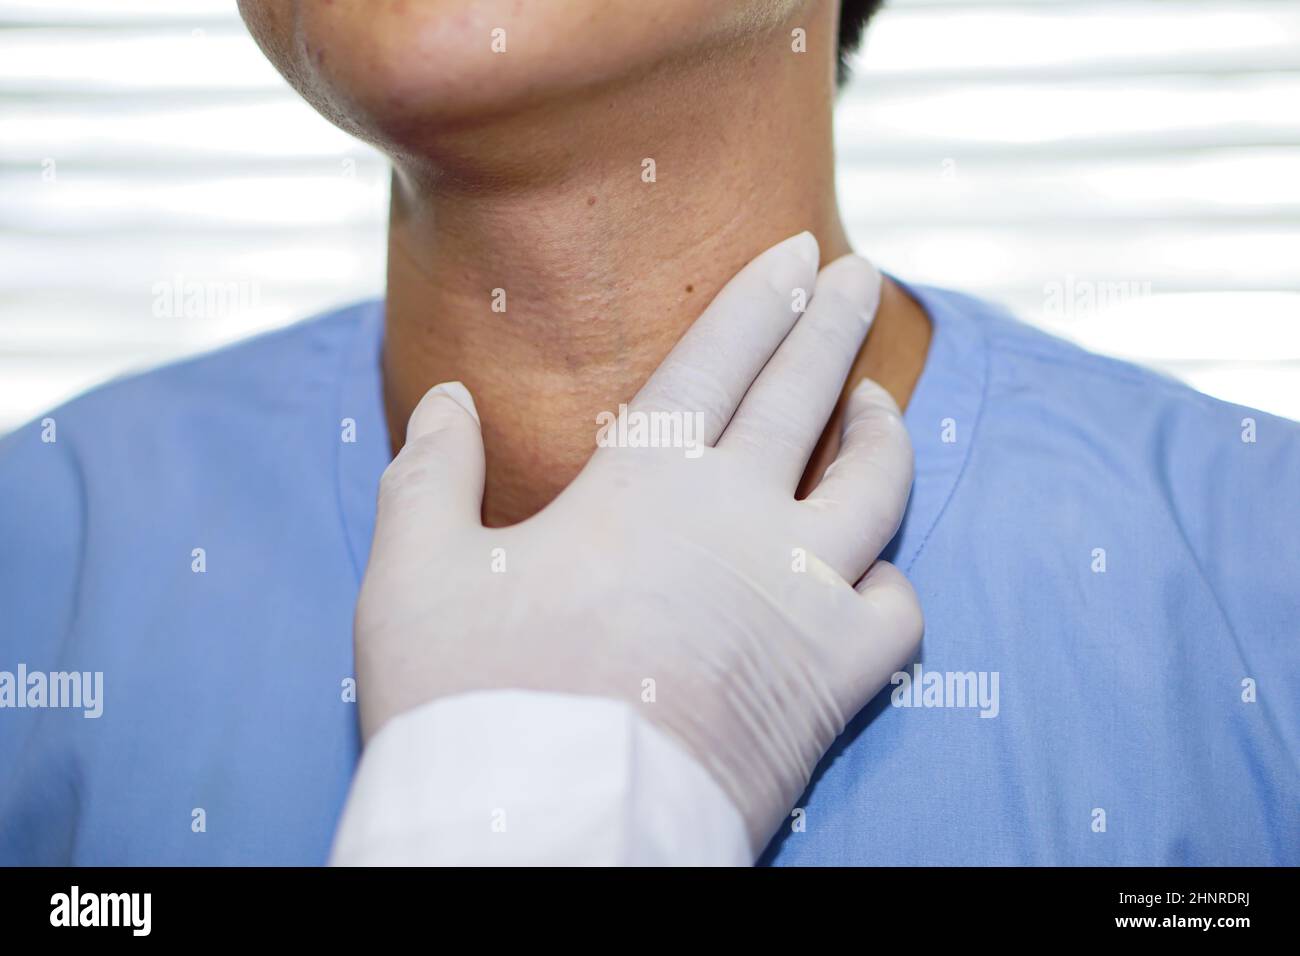 Asiatische Dame Frau Patienten haben abnorme Vergrößerung der Schilddrüse Hyperthyreose (überaktive Schilddrüse) an der Kehle, gesunde starke medizinische Konzept Stockfoto